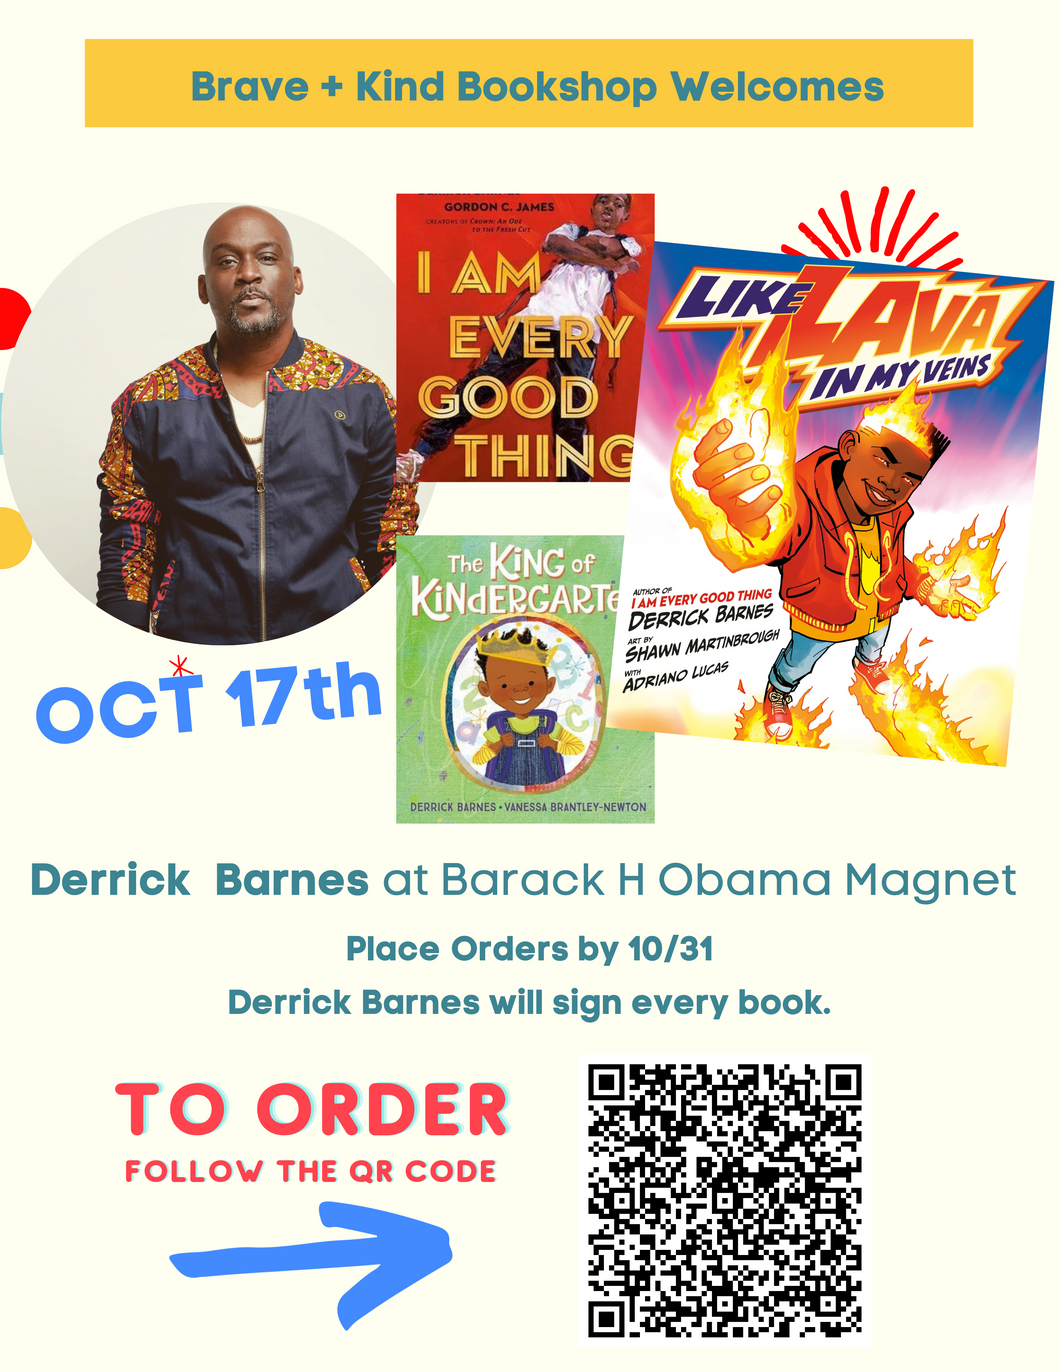 Derrick Barnes at Barack H Obama Magnet of Tech| Oct. 17th